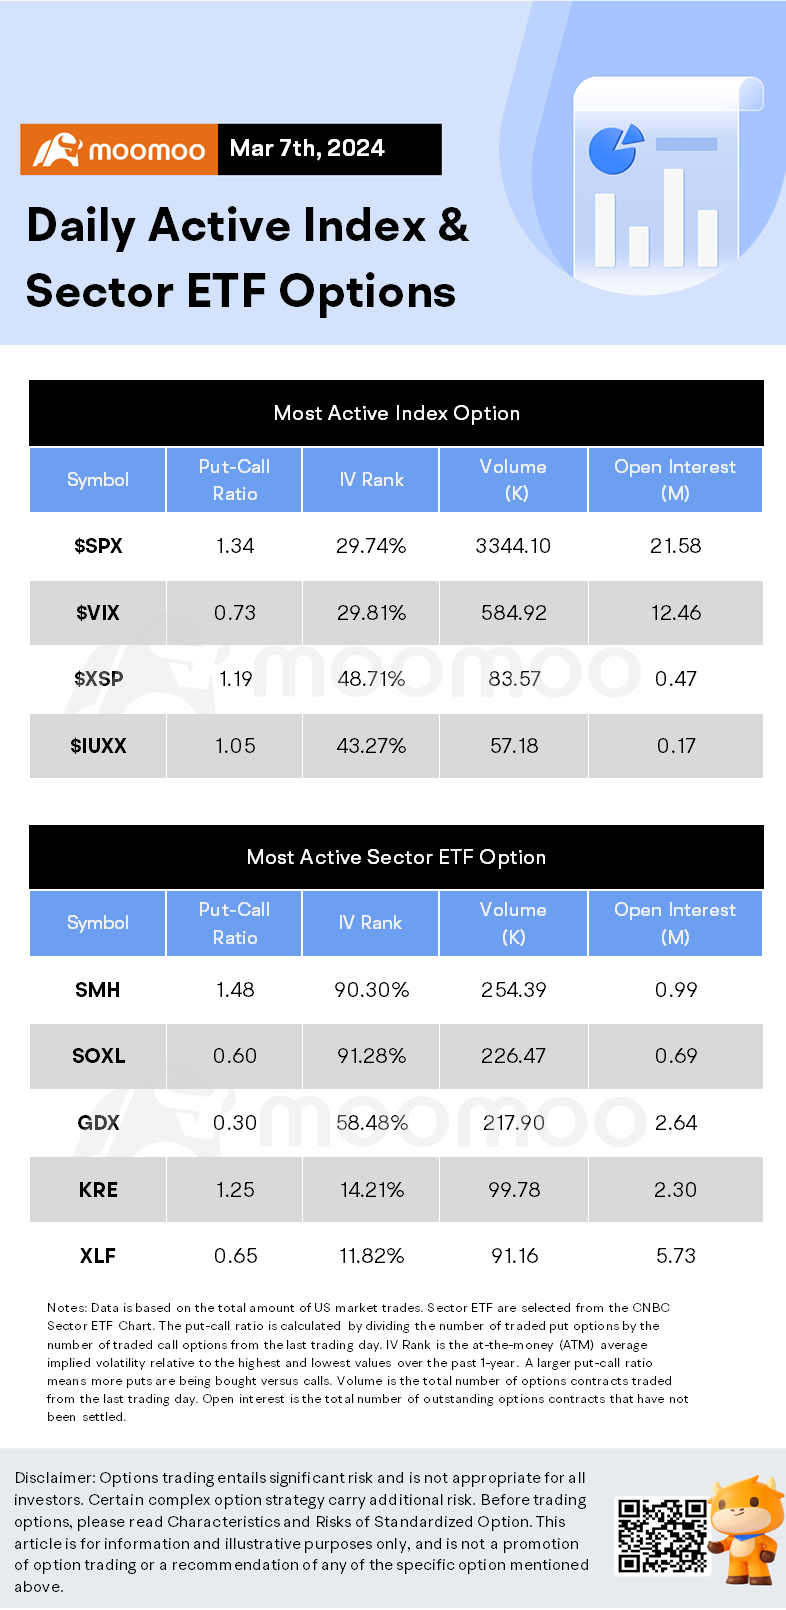 期權市場統計數據：Rivian 股票在 R2 推出之前獲得了新的買入評級提升